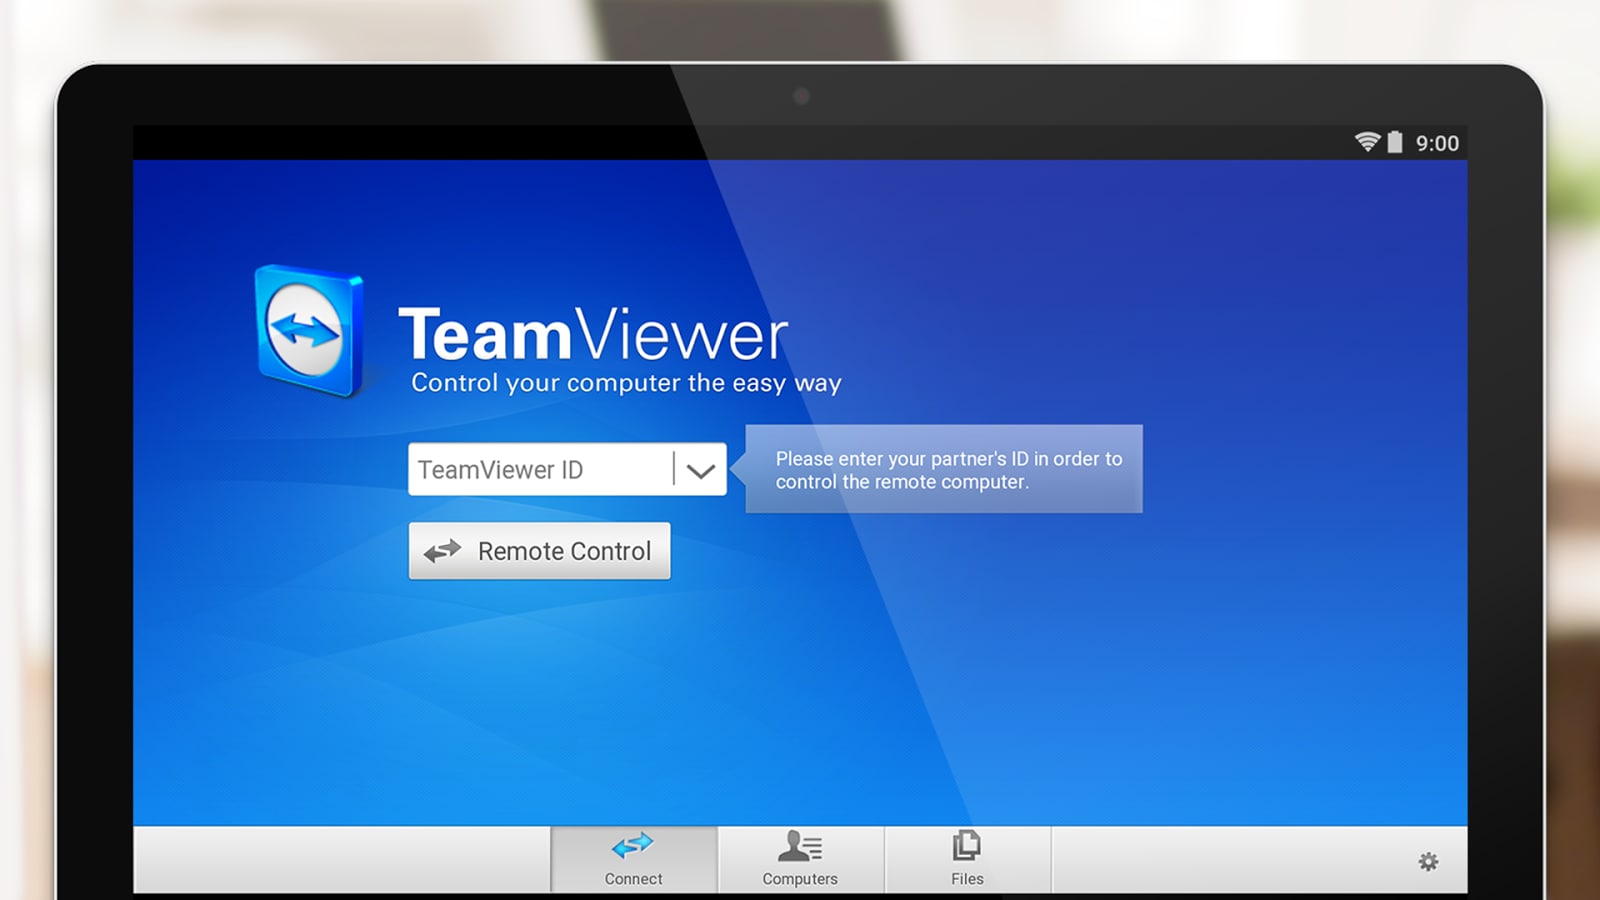 Ttps download teamviewer com download teamviewerqj_en.exe rufus software free download